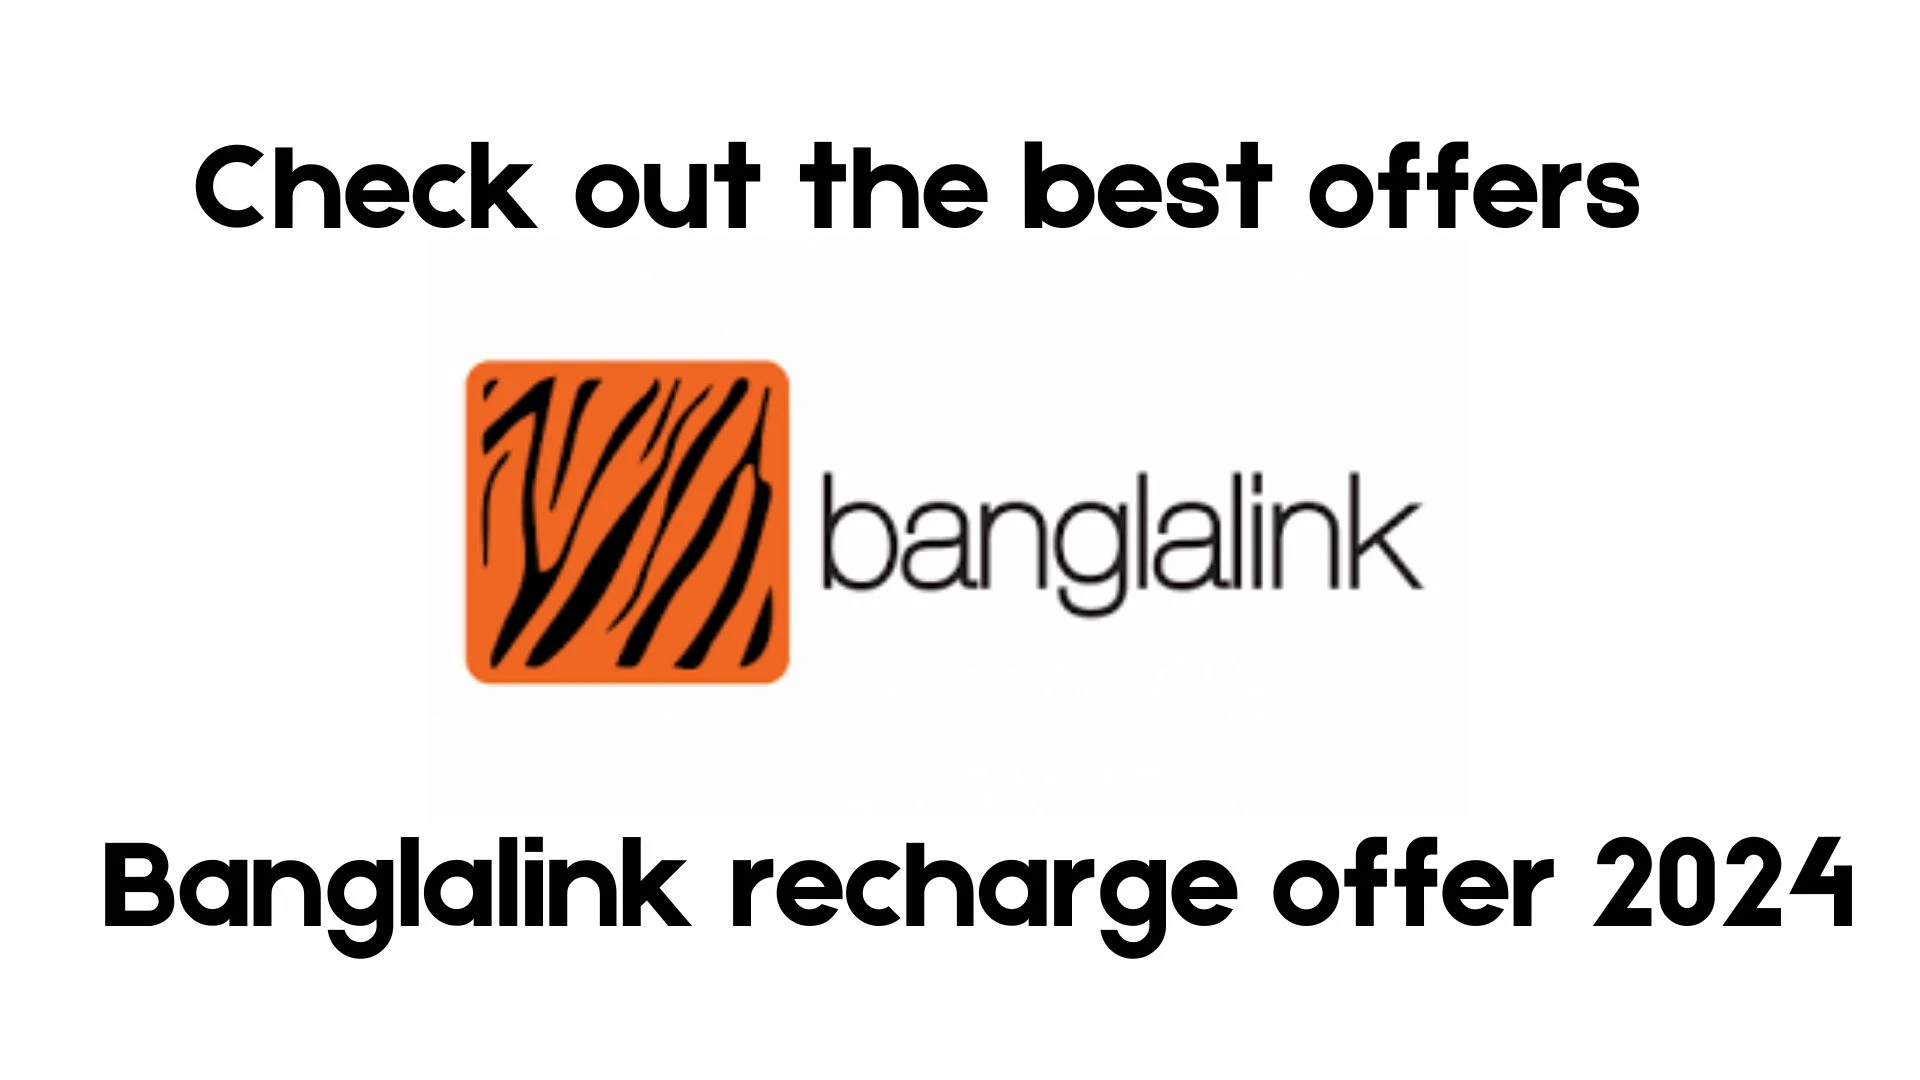 Banglalink recharge offer 2024